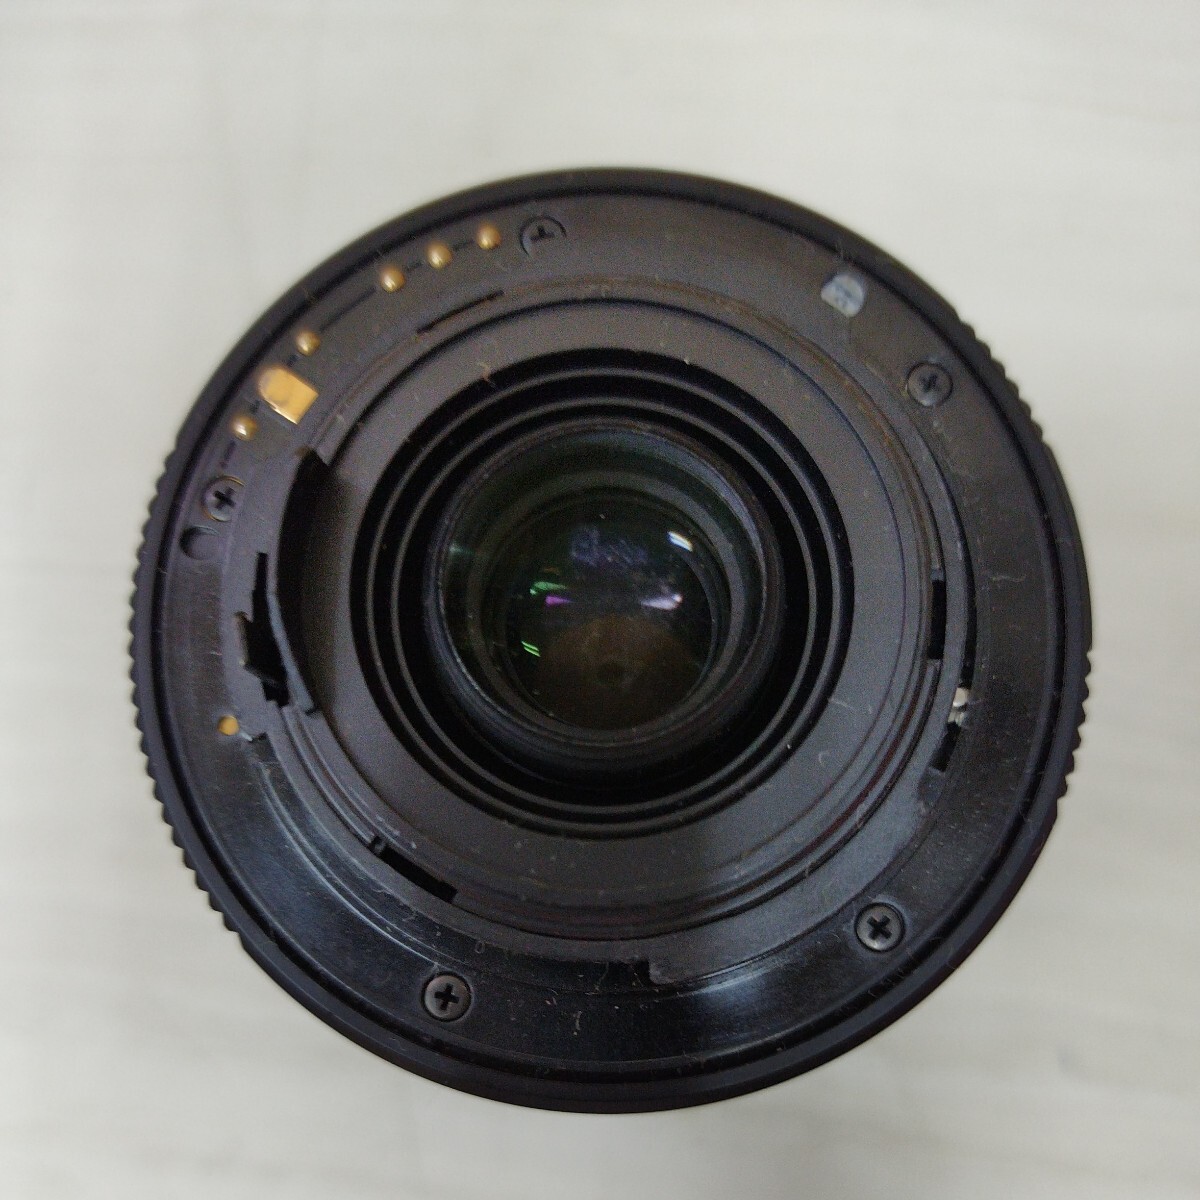 SMC PENTAX-DAL 1:4-5.8 55-300mm ED Φ58 ペンタックス カメラレンズ ペンタックス用 未確認 LENS1974の画像8